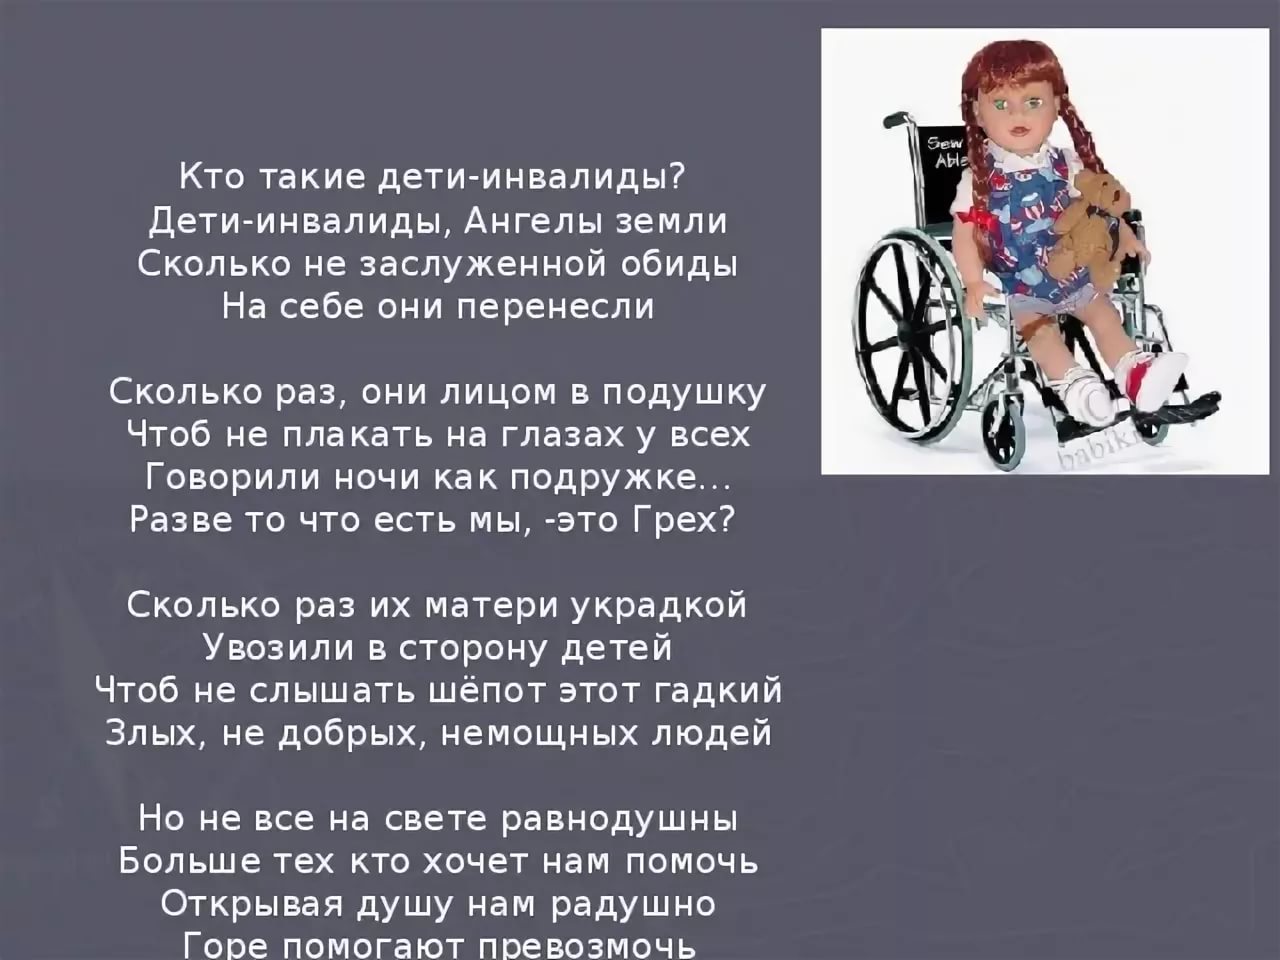 5dd084ea31234 - Высказывания о детях инвалидах